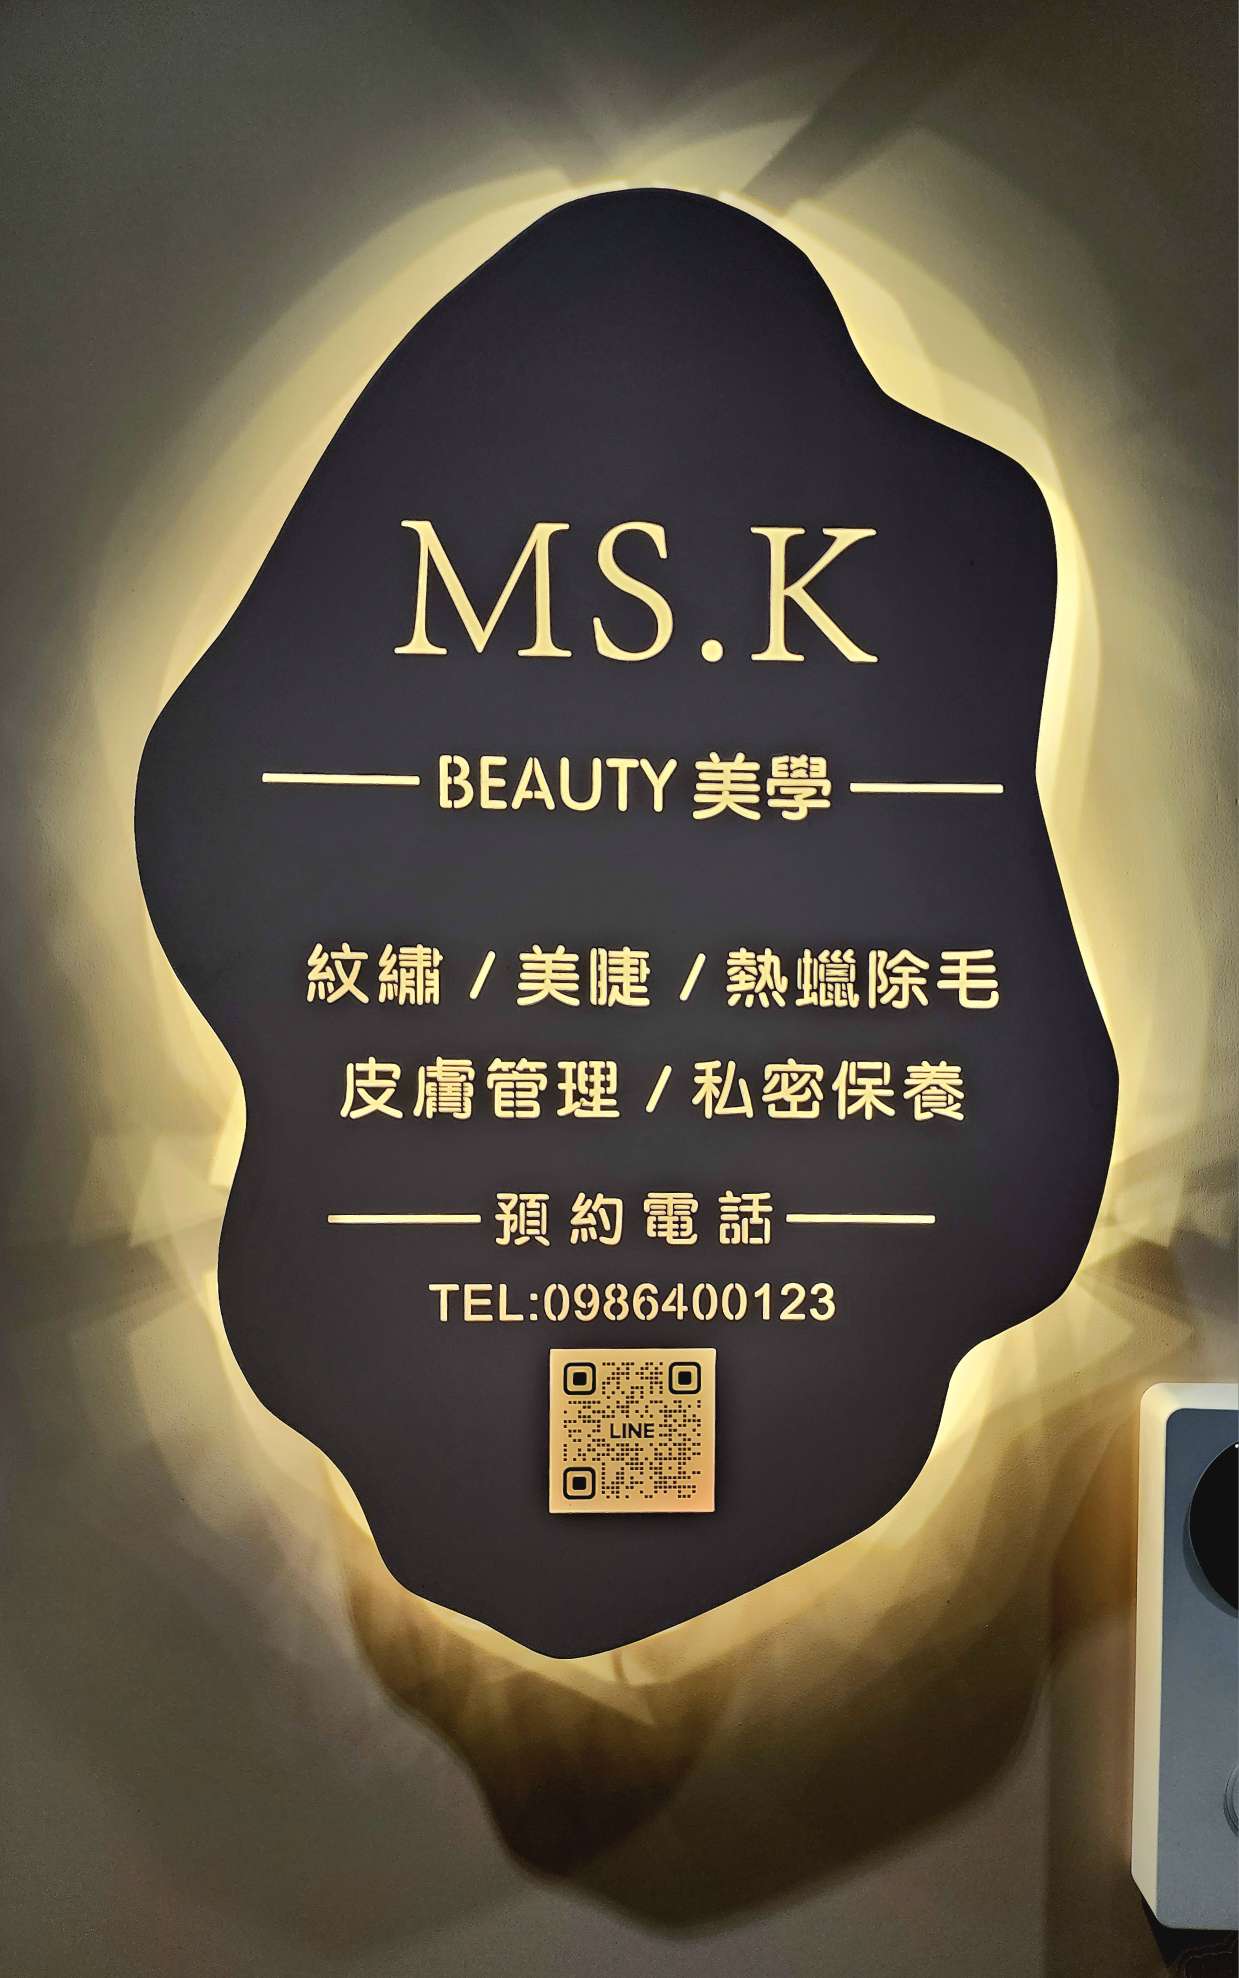 Ms.k Beauty makes beauty 霧眉